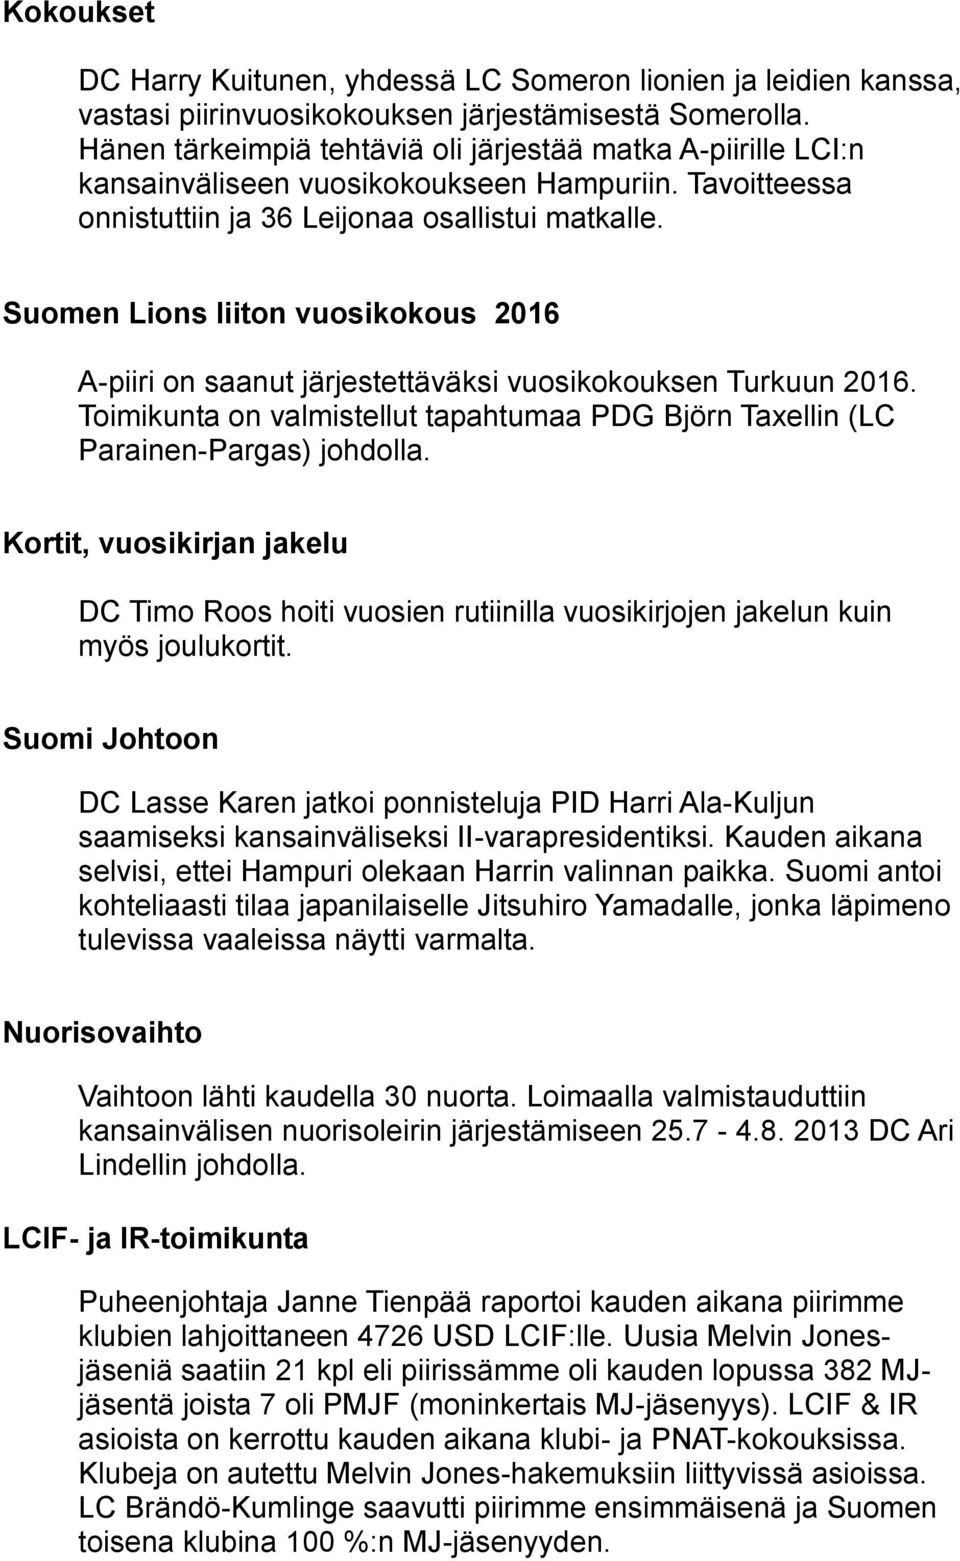 Suomen Lions liiton vuosikokous 2016 A-piiri on saanut järjestettäväksi vuosikokouksen Turkuun 2016. Toimikunta on valmistellut tapahtumaa PDG Björn Taxellin (LC Parainen-Pargas) johdolla.